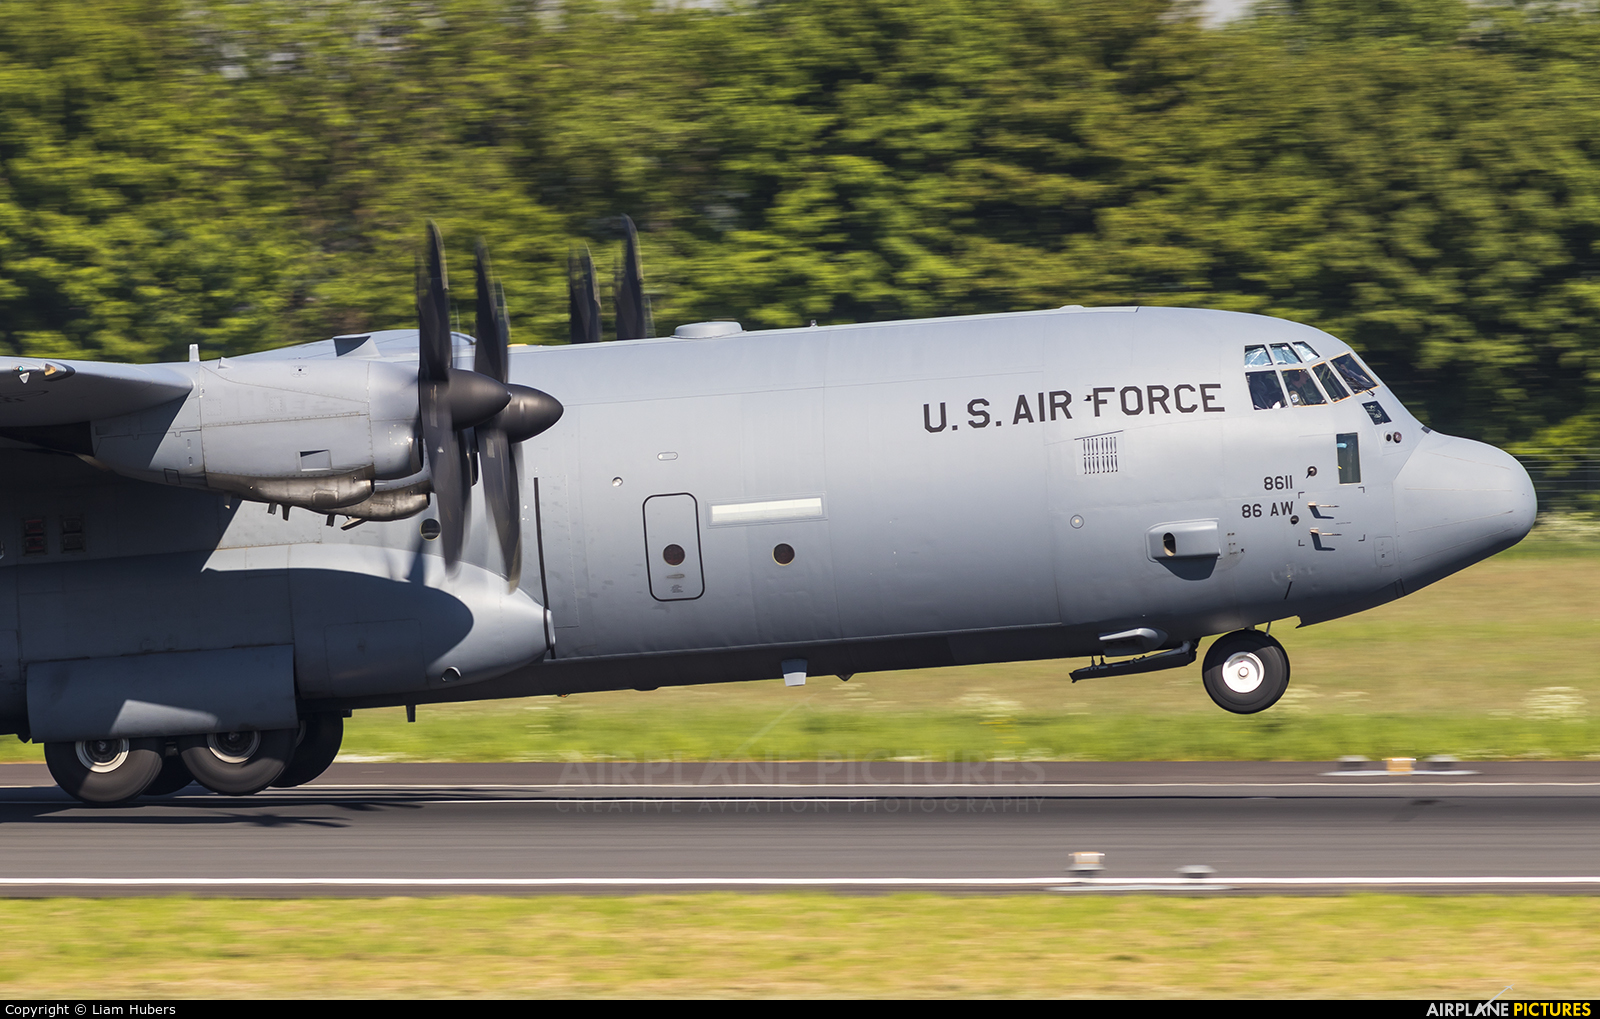 USA - Air Force 06-8611 aircraft at Rotterdam